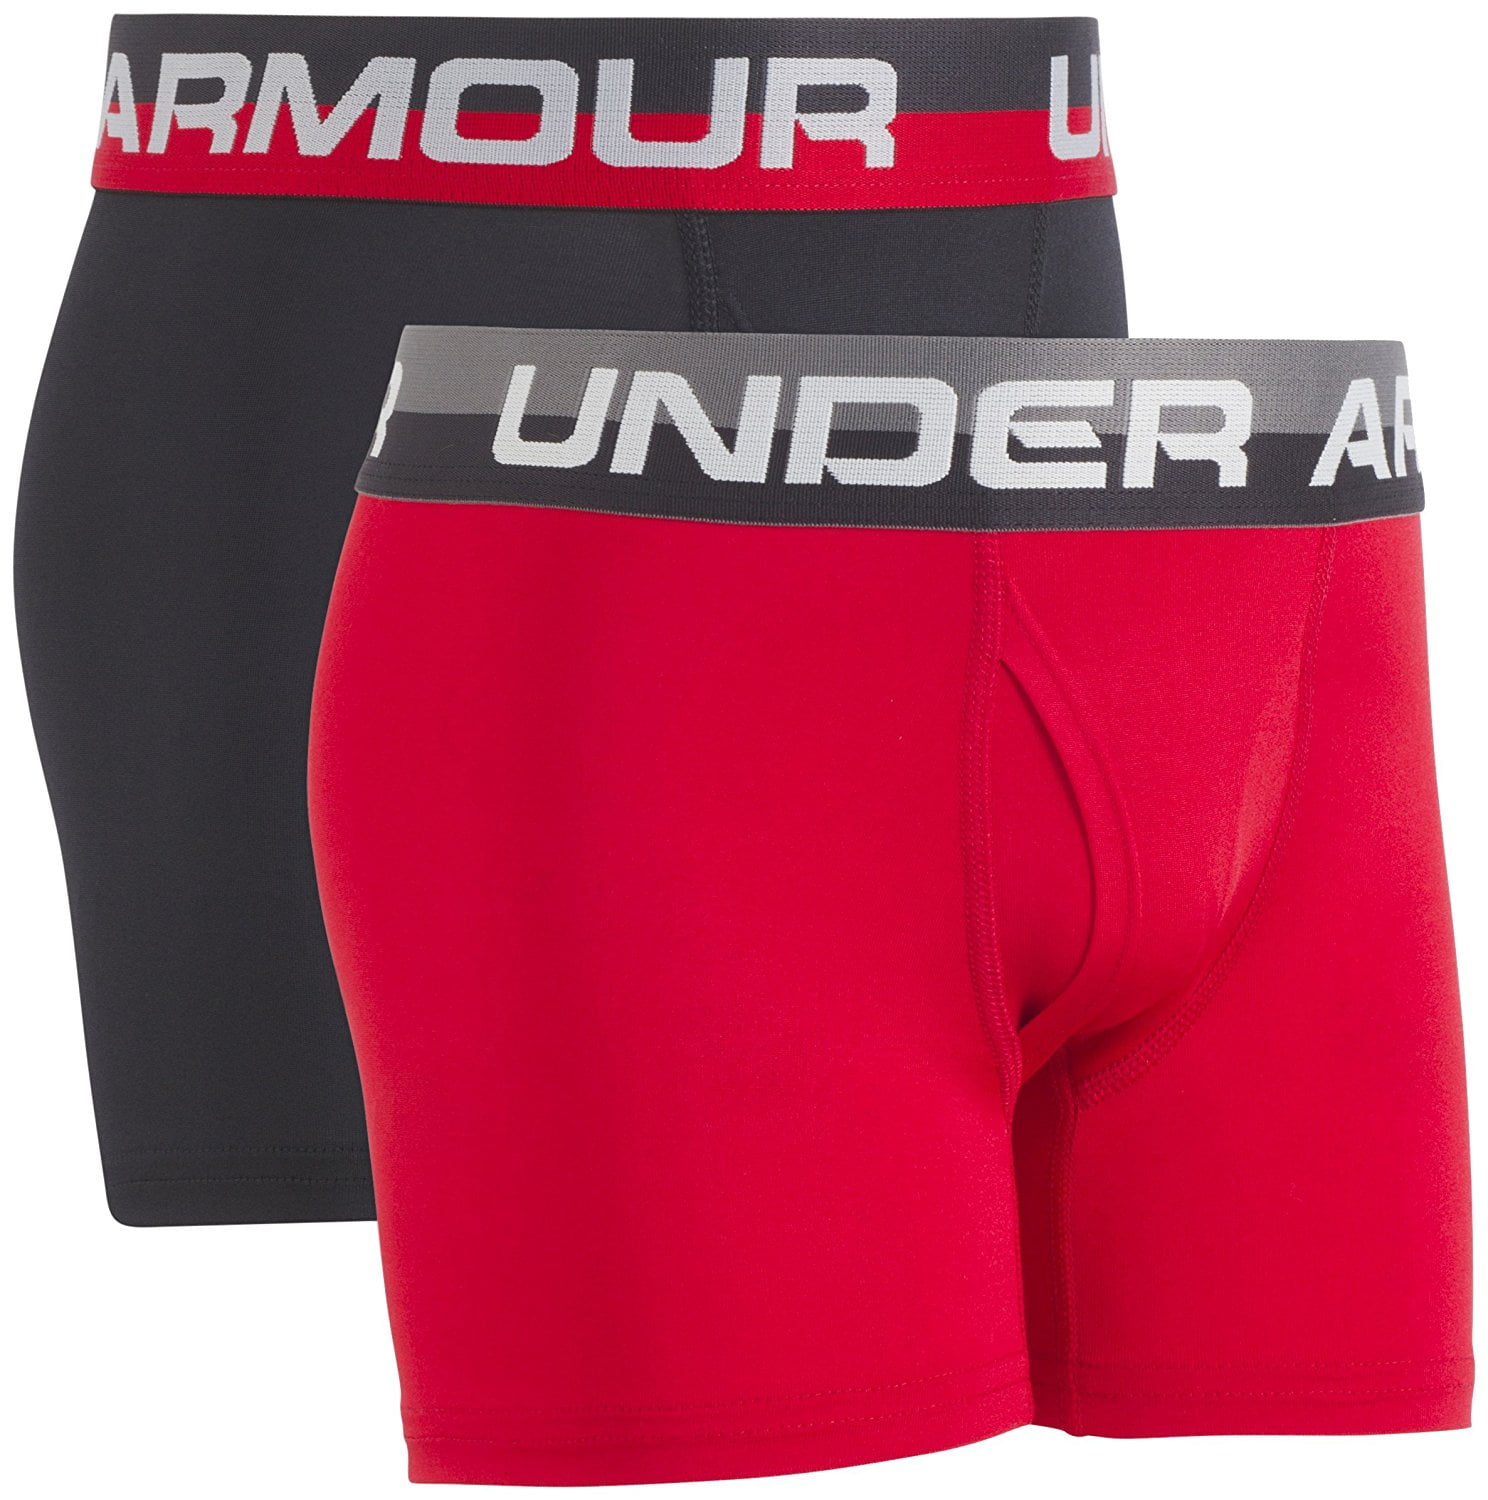 under armour underwear walmart